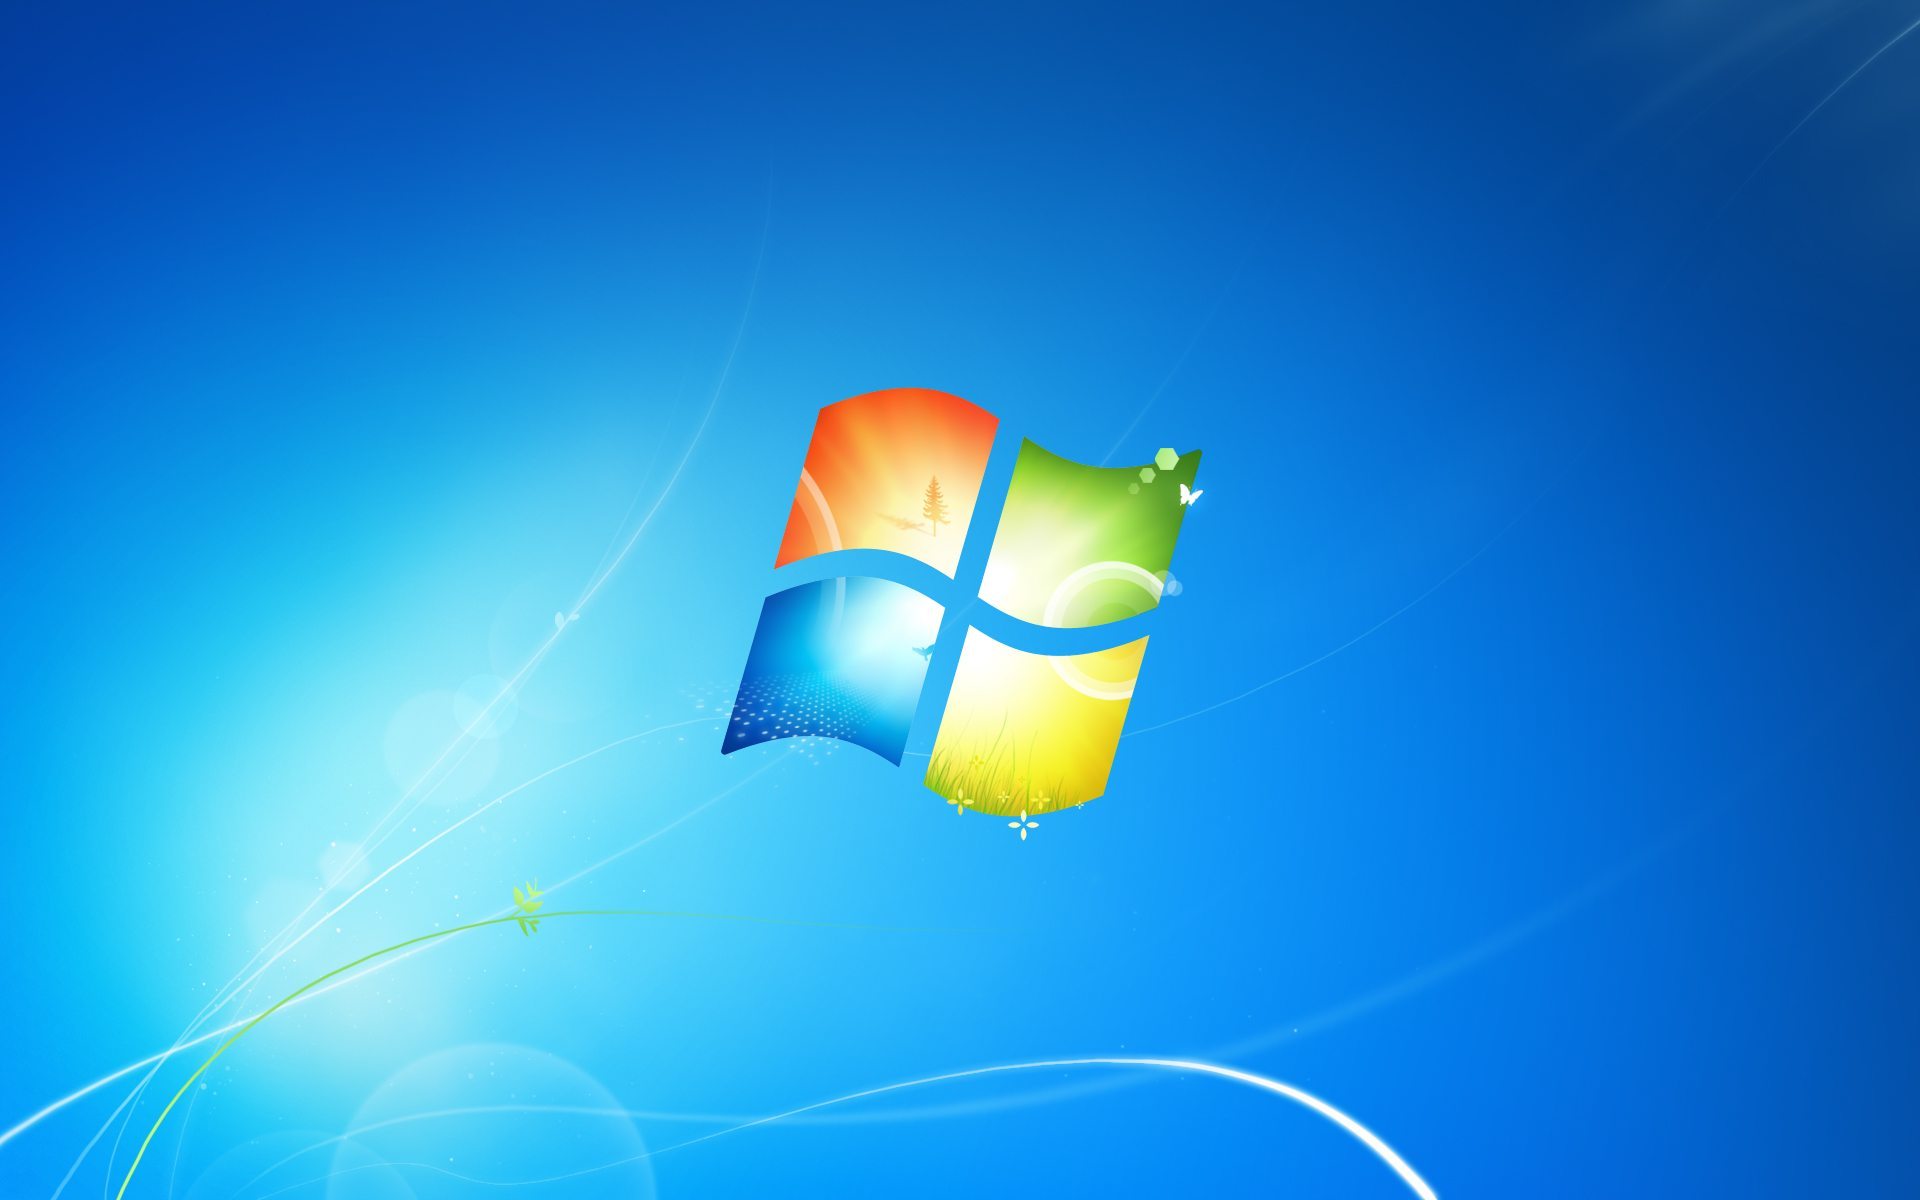 Kết thúc Windows 7 và 8 đồng nghĩa với việc đón nhận phiên bản mới nhất - Windows